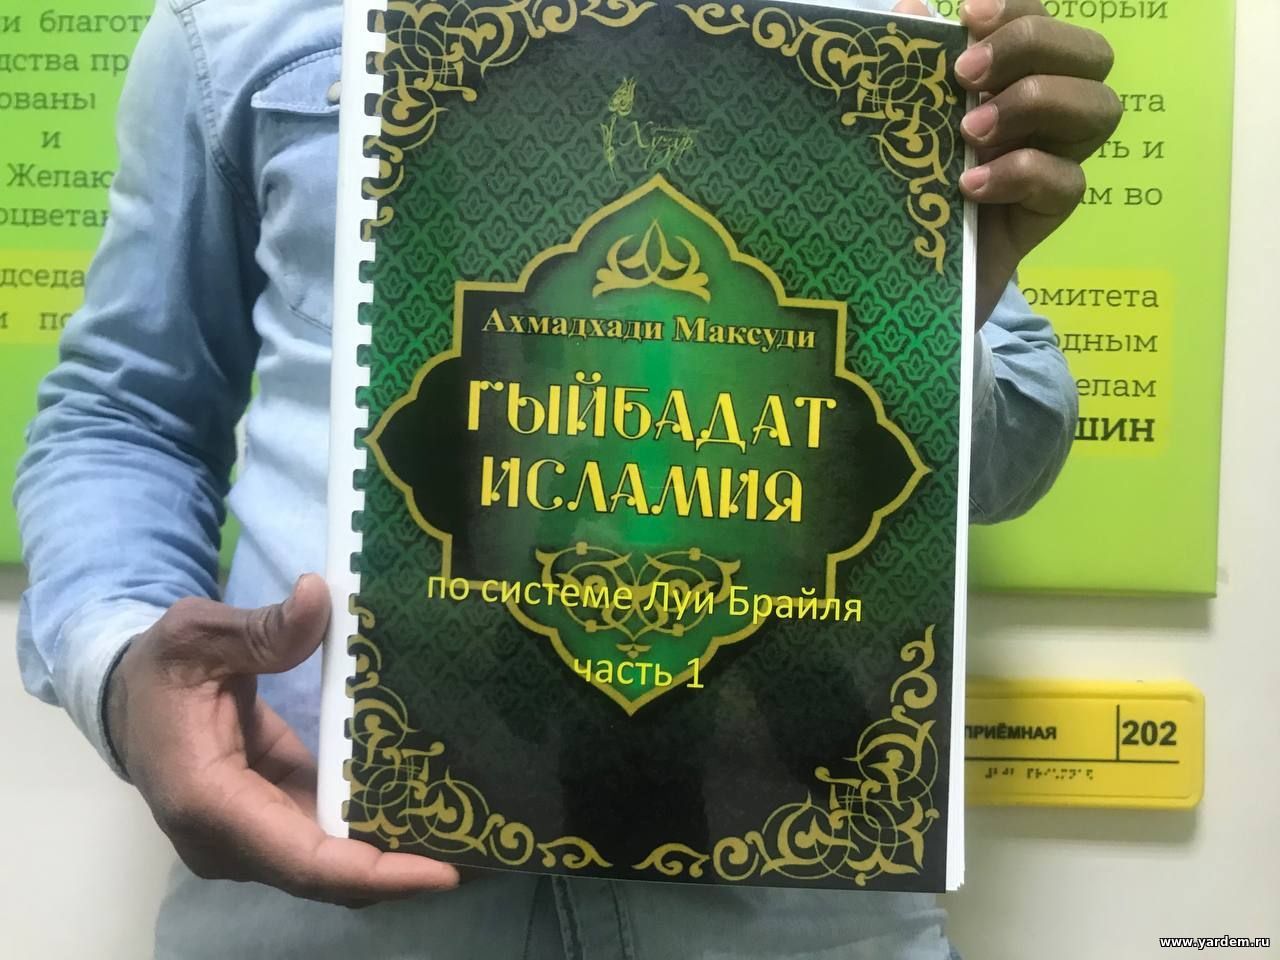 Вышла книга "Ритуалы Ислама" для незрячих. Общие новости